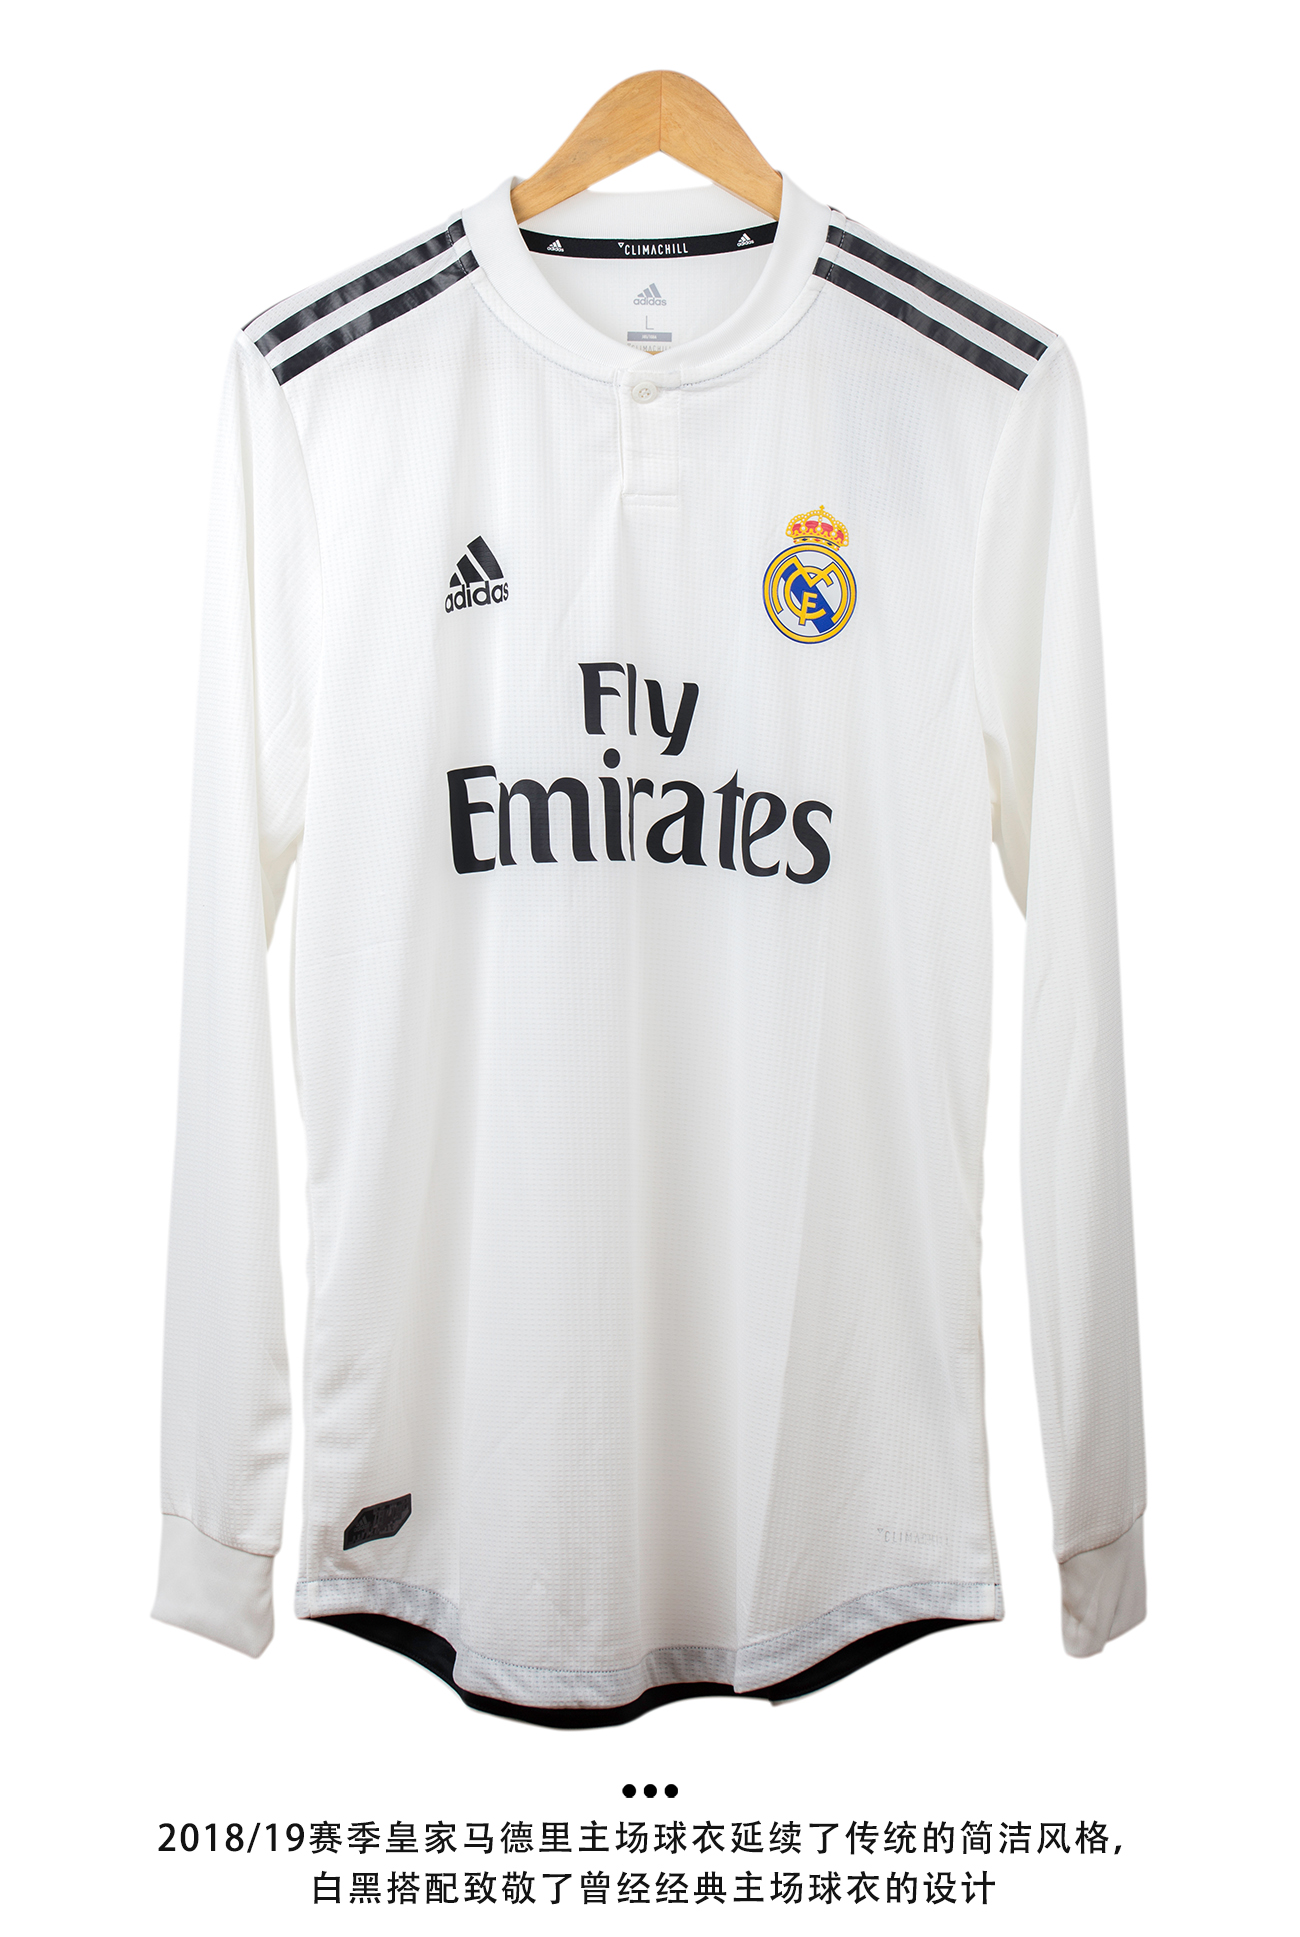 号码有“层次” 皇家马德里下赛季球衣印号字体发布 - 球衣 - 足球鞋足球装备门户_ENJOYZ足球装备网